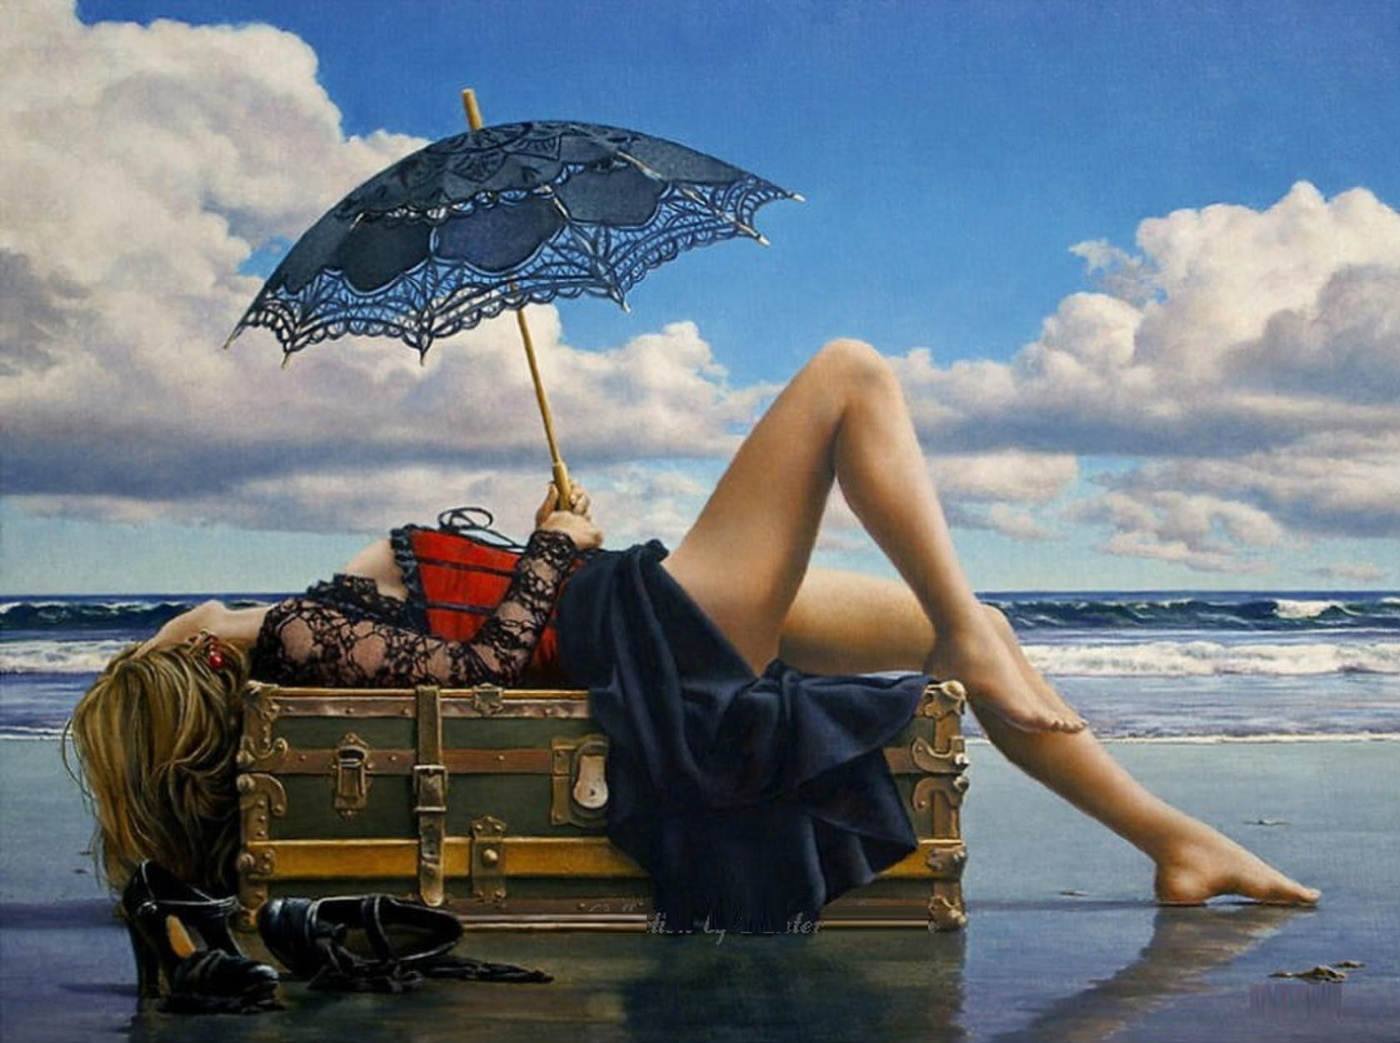 Девушка с зонтом на пляже